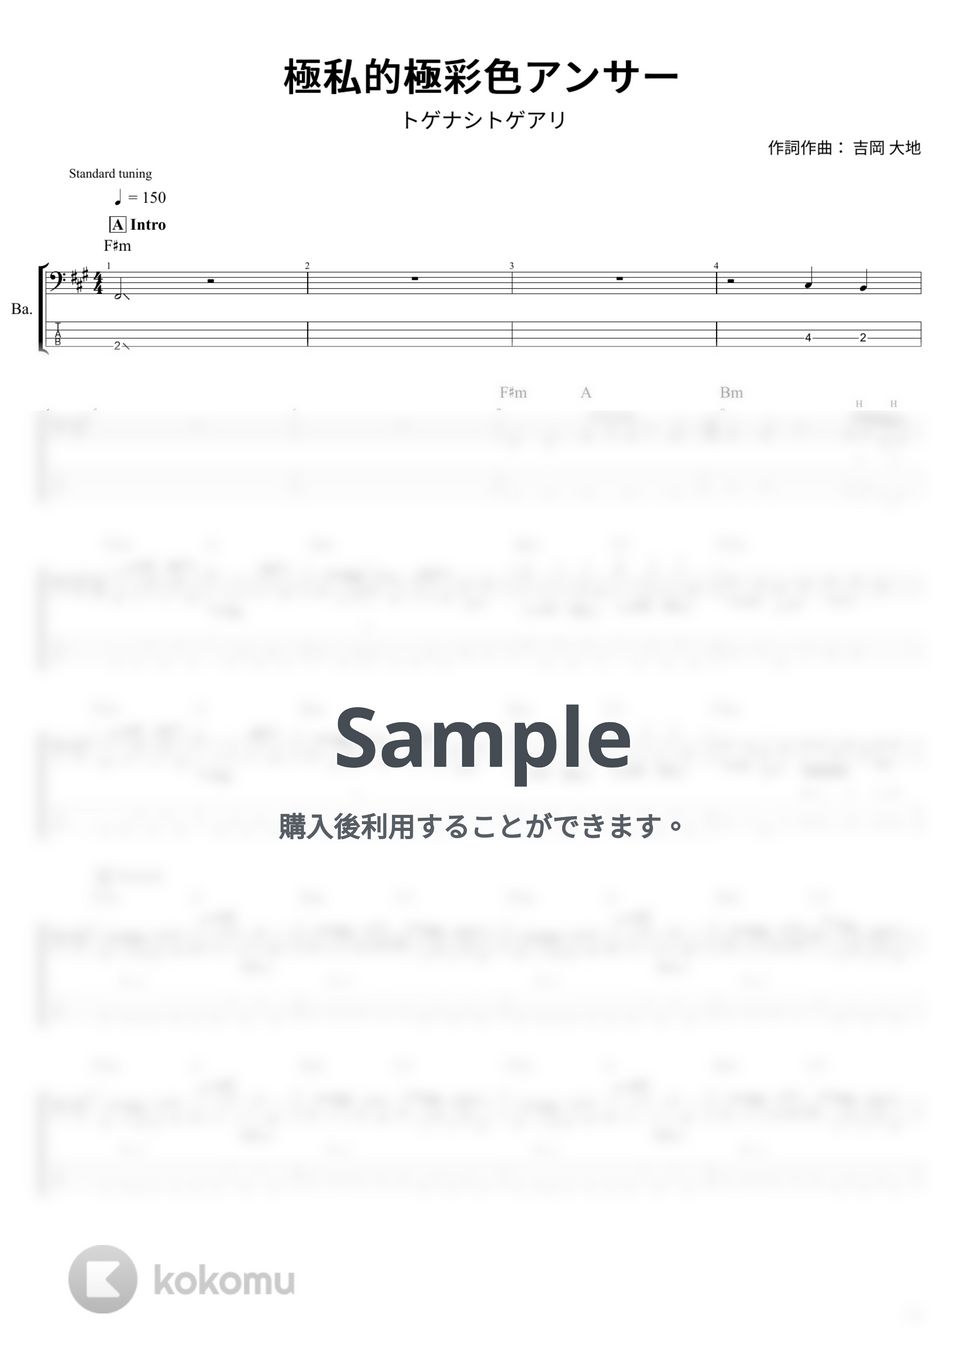 トゲナシトゲアリ - 極私的極彩色アンサー (ベース Tab譜 4弦) by T's bass score